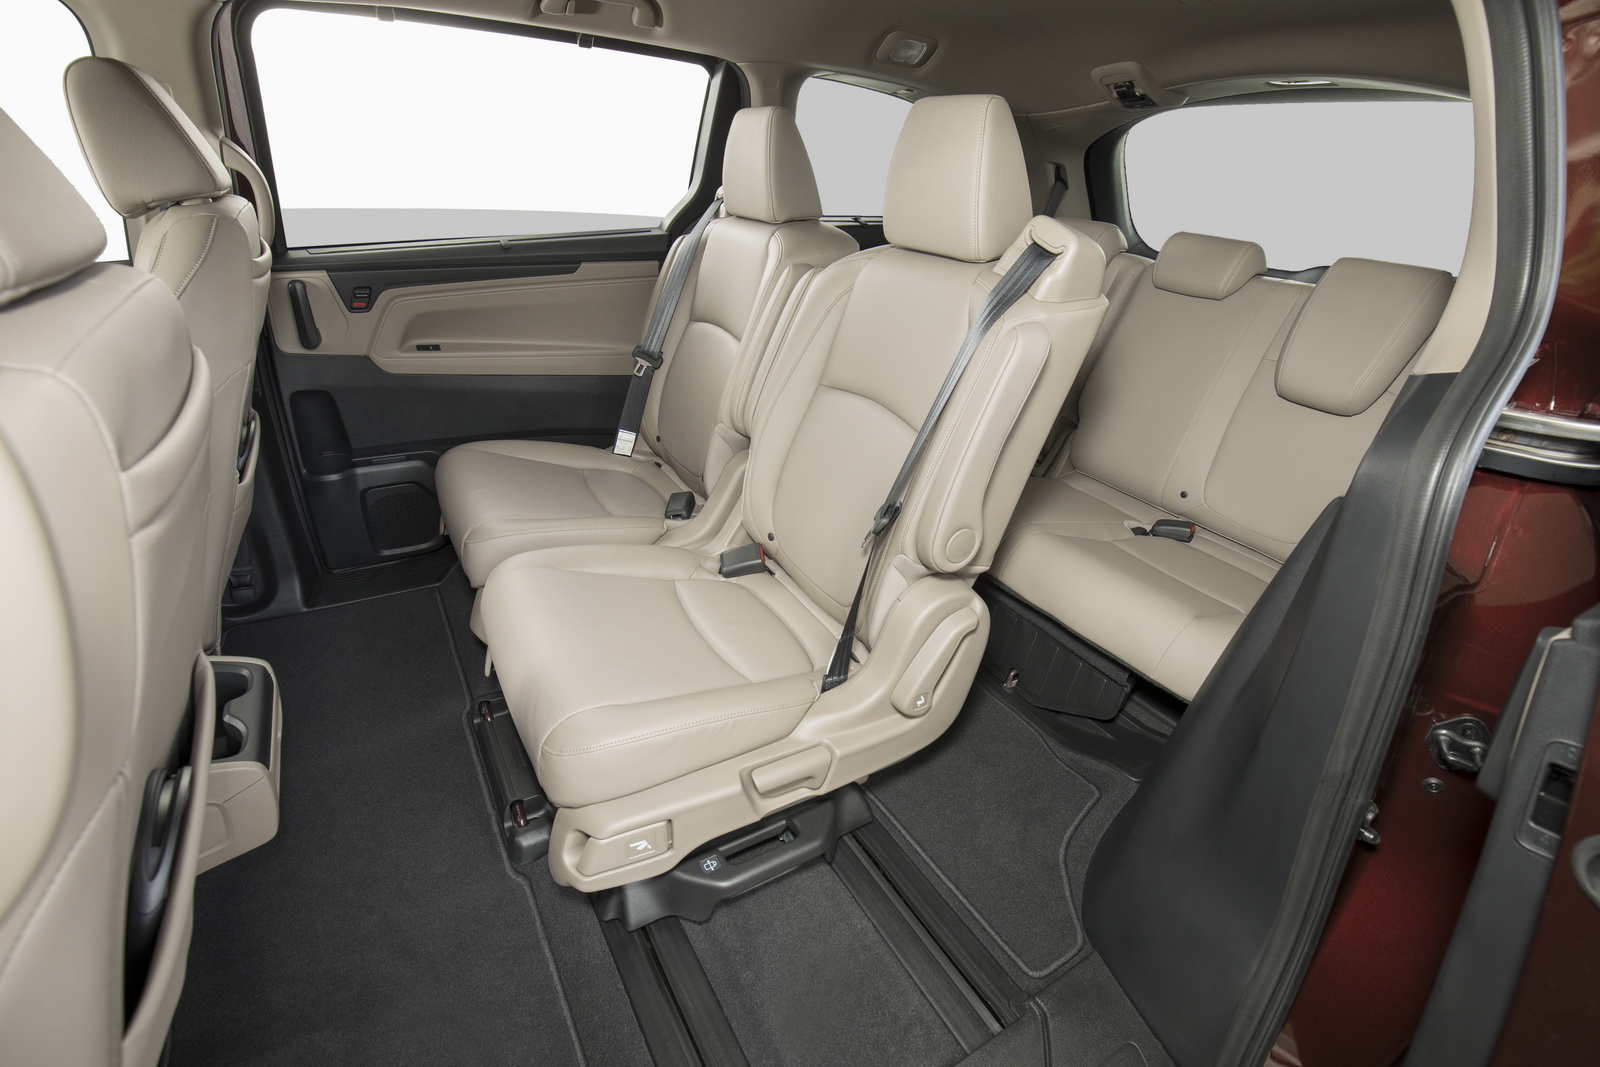 Xe gia đình lý tưởng Honda Odyssey 2018 được công bố giá bán - Ảnh 4.